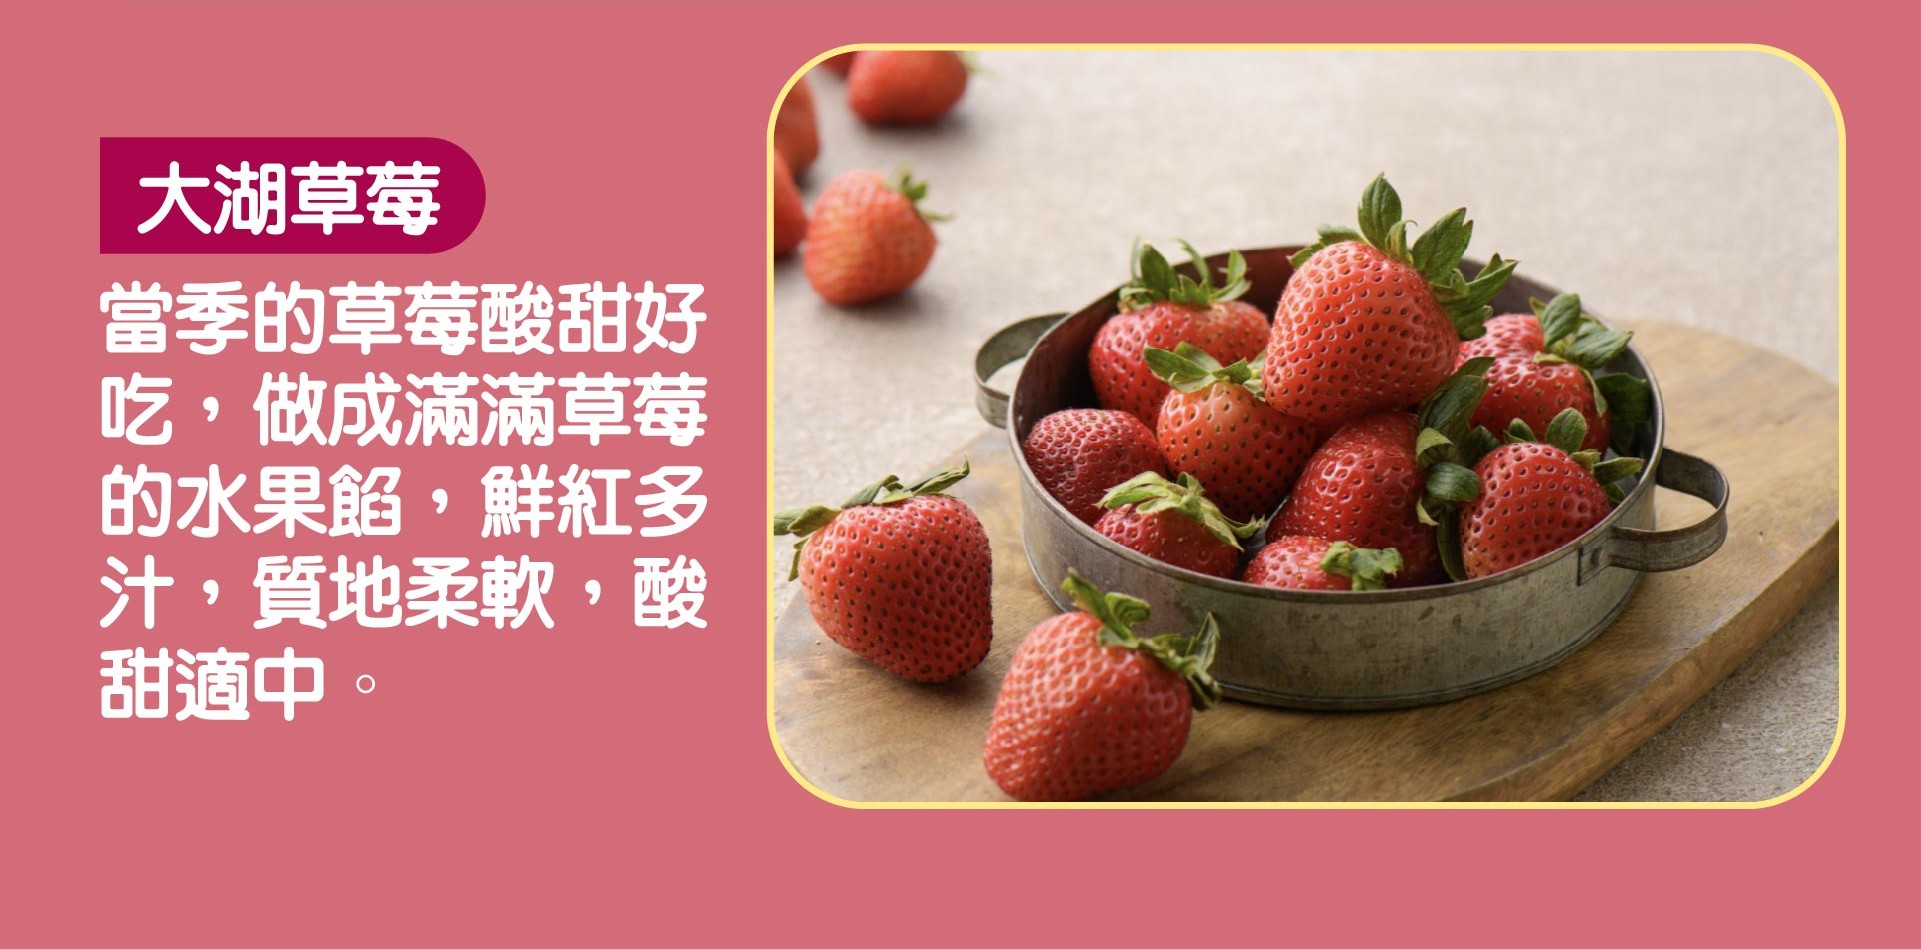 草莓寶盒-05-3.jpg